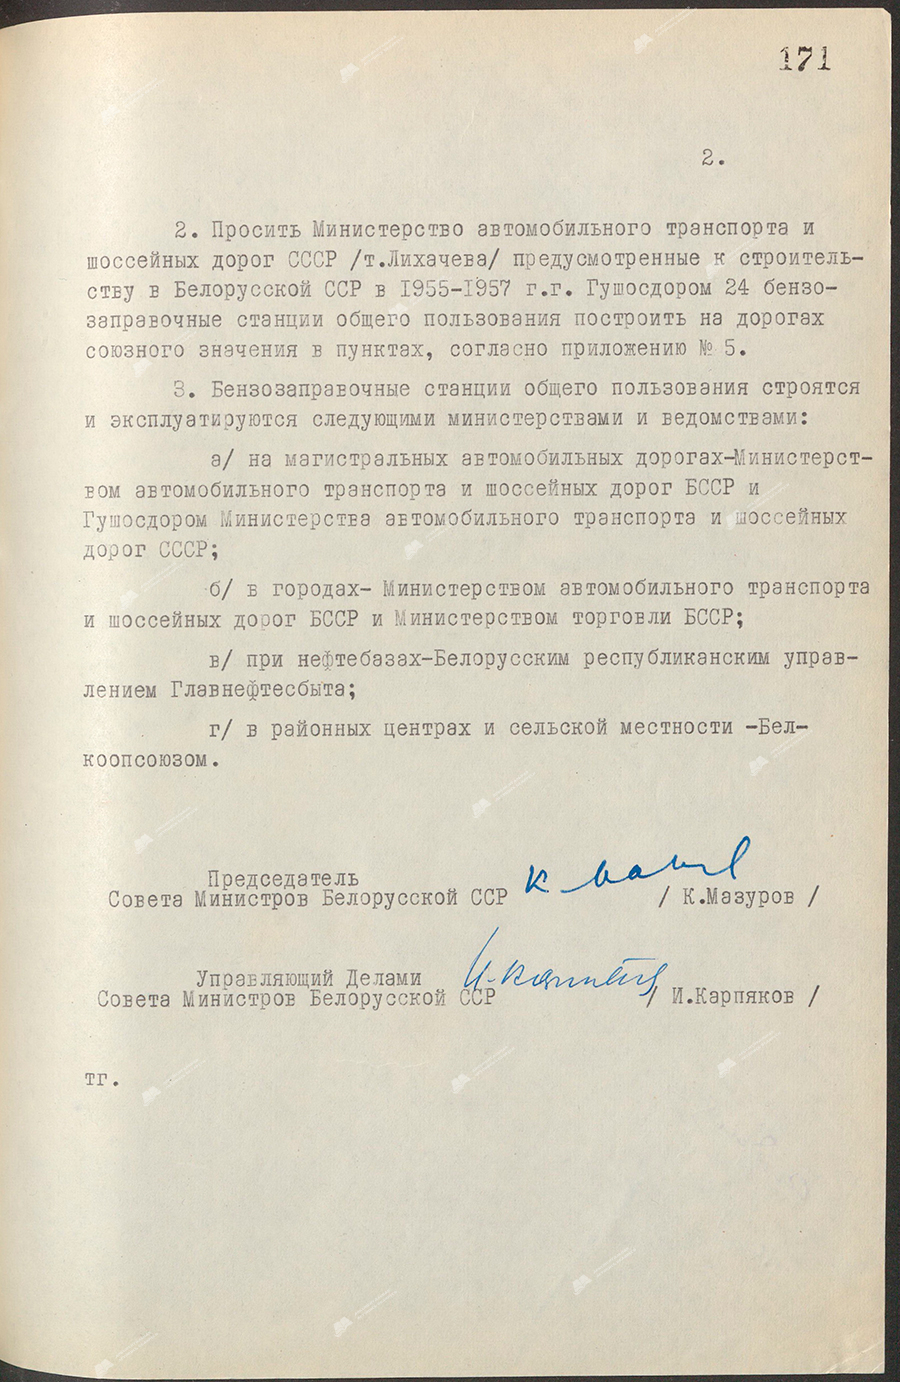 Beschluss Nr. 1021 des Ministerrats der Weißrussischen SSR «Über den Bau öffentlicher Gastankstellen in der Republik»-с. 1